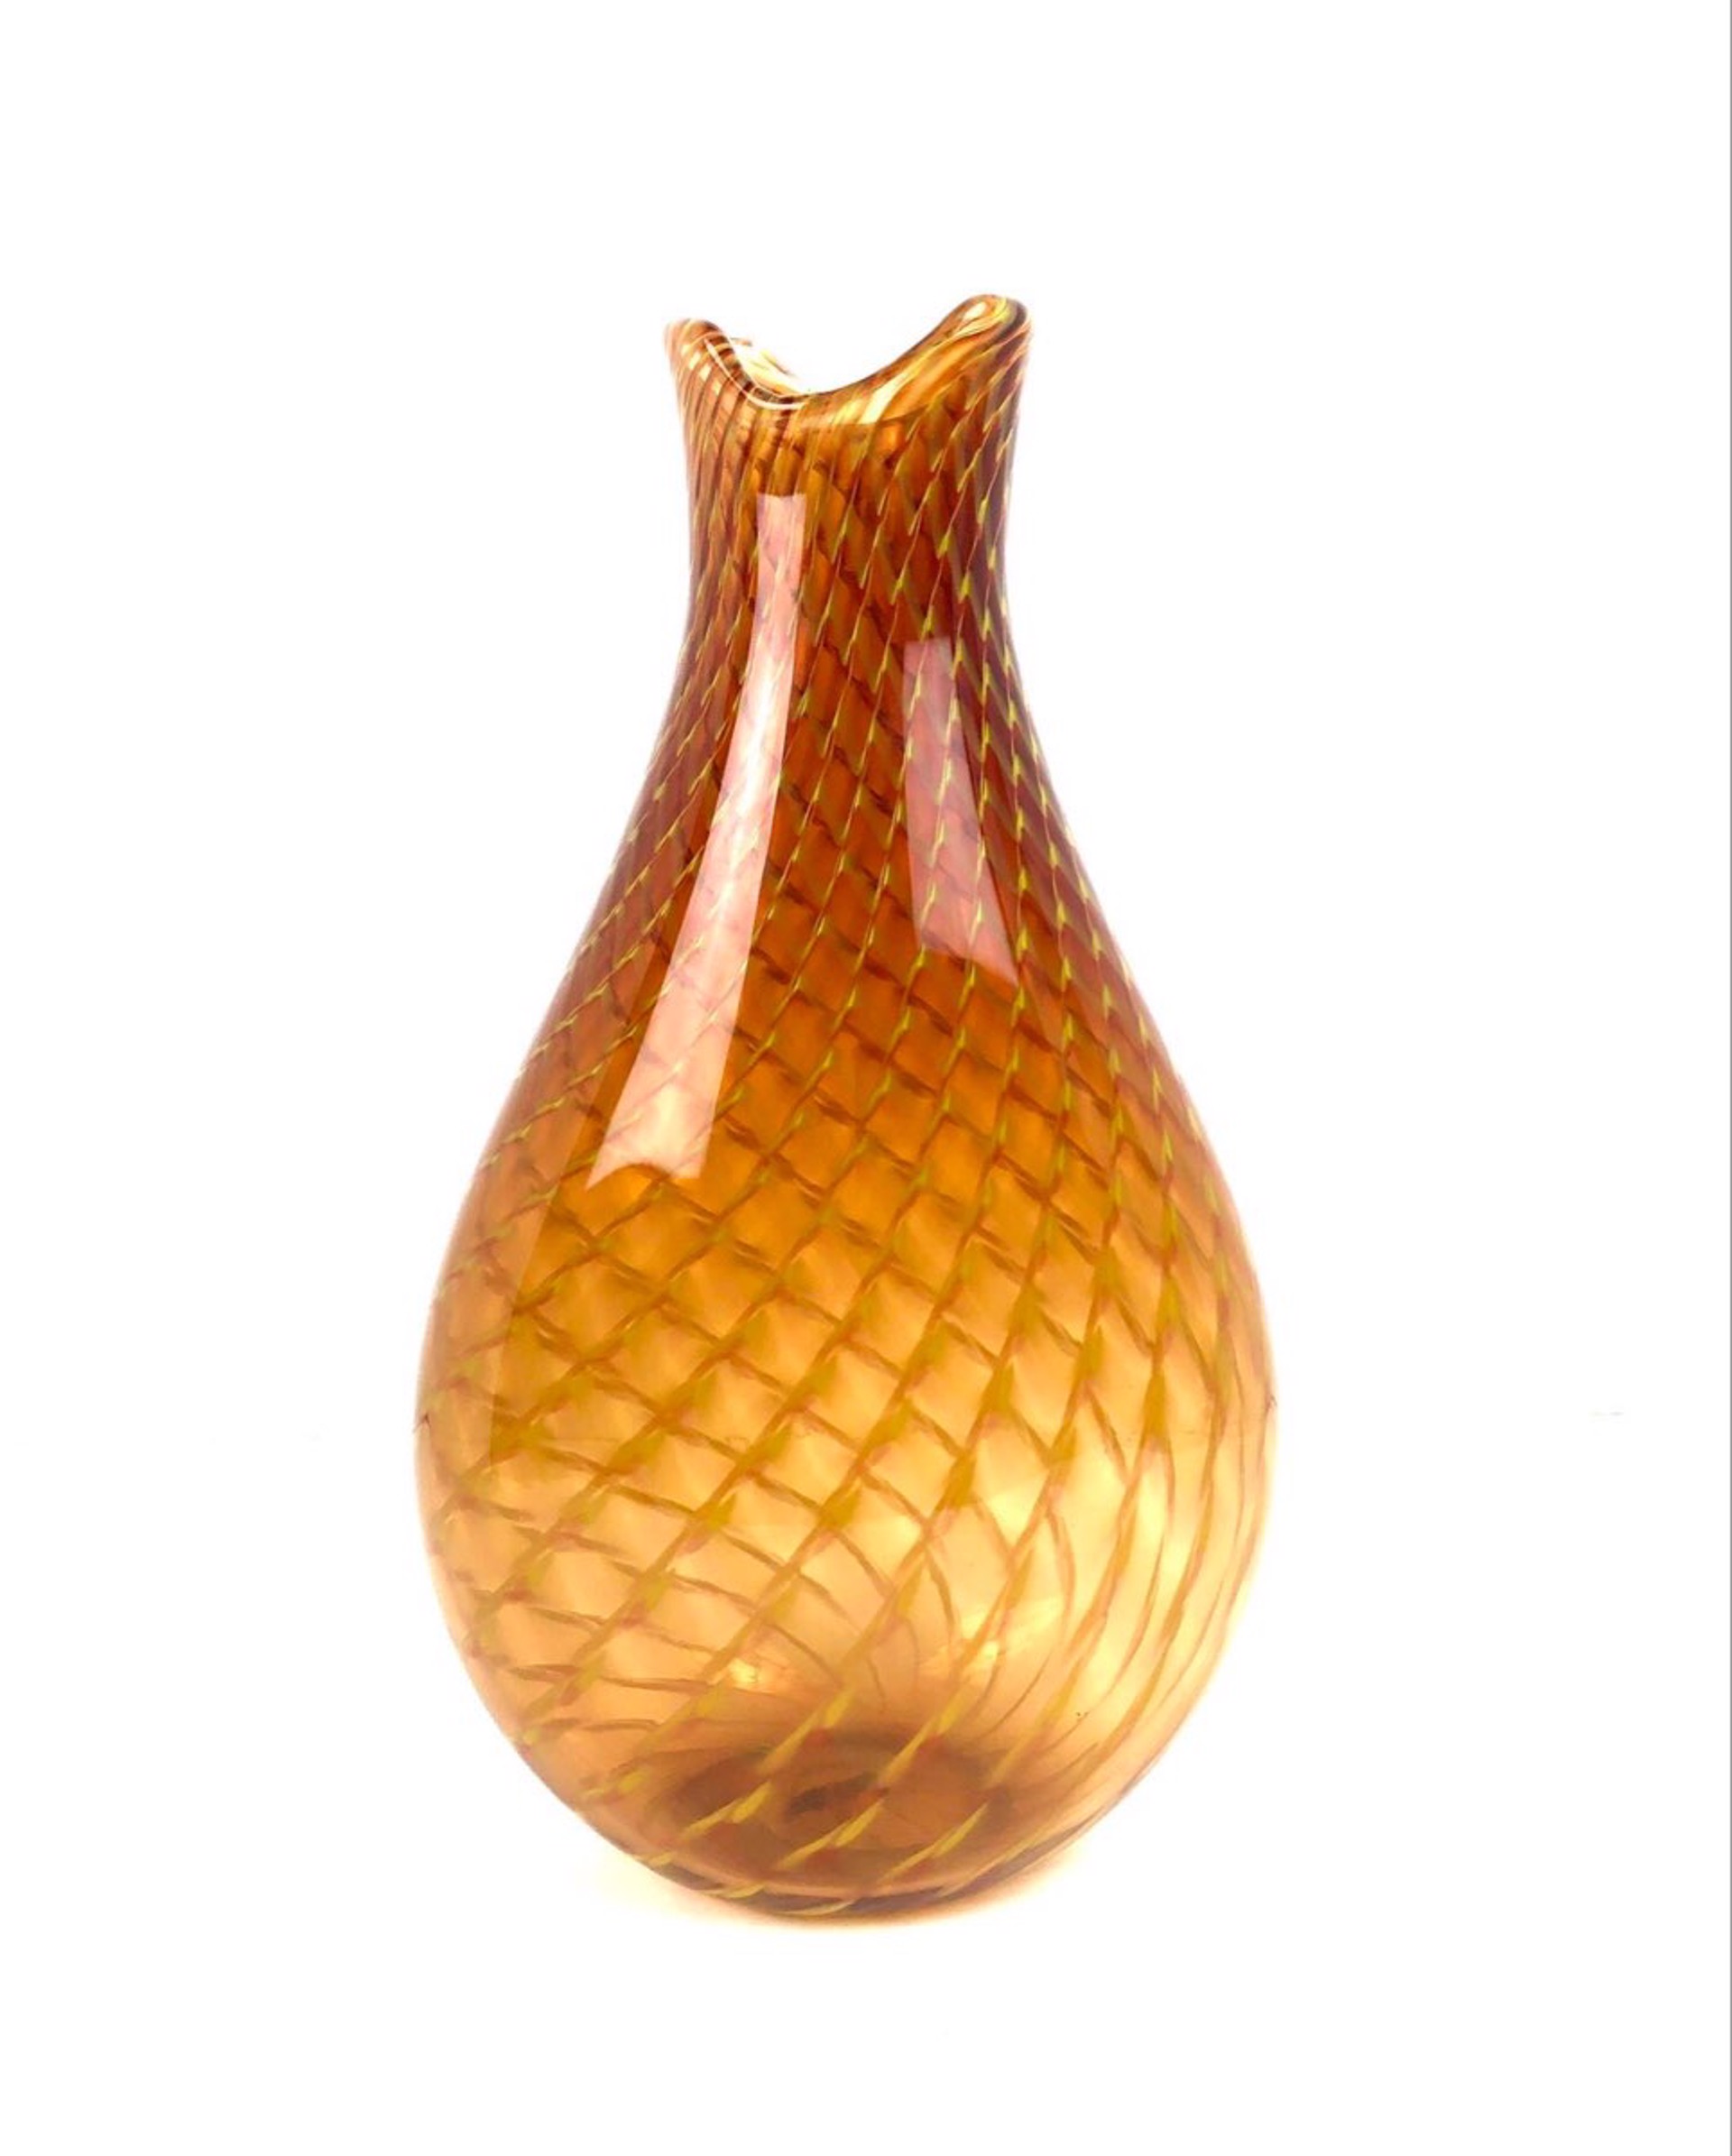 Fishnet Vase by Algar Dole